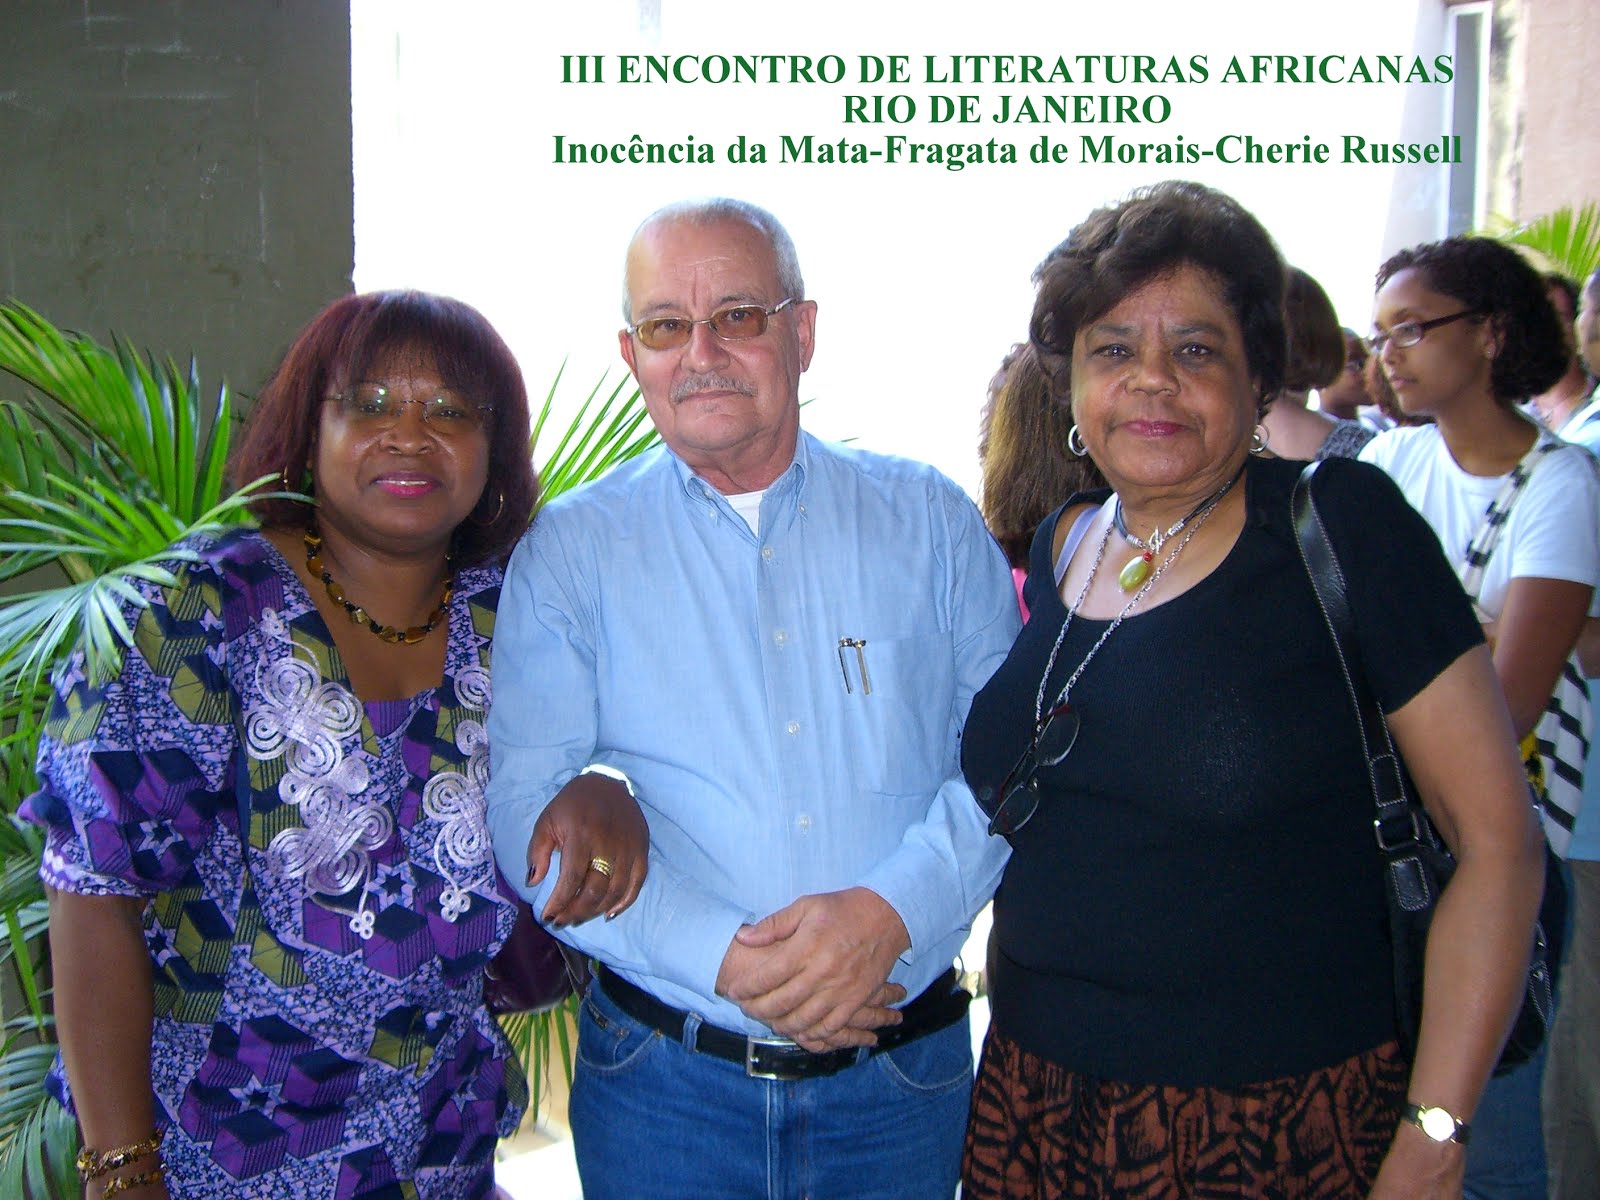 III ENCONTRO DE LITERATURAS AFRICANAS